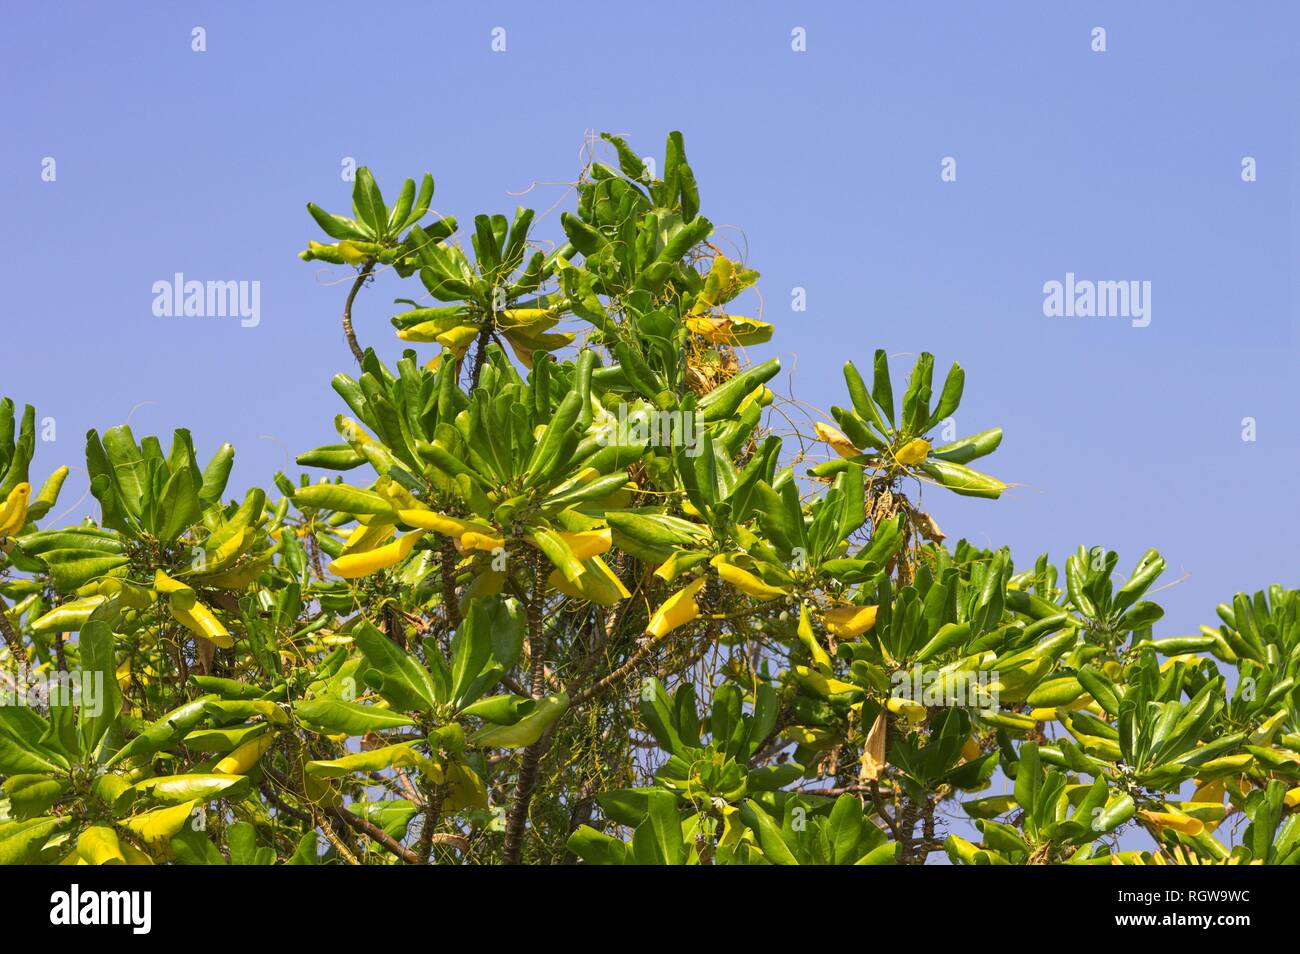 Maledivische Pflanze mit grünen und gelben Blätter (Ari Atoll, Malediven  Stockfotografie - Alamy